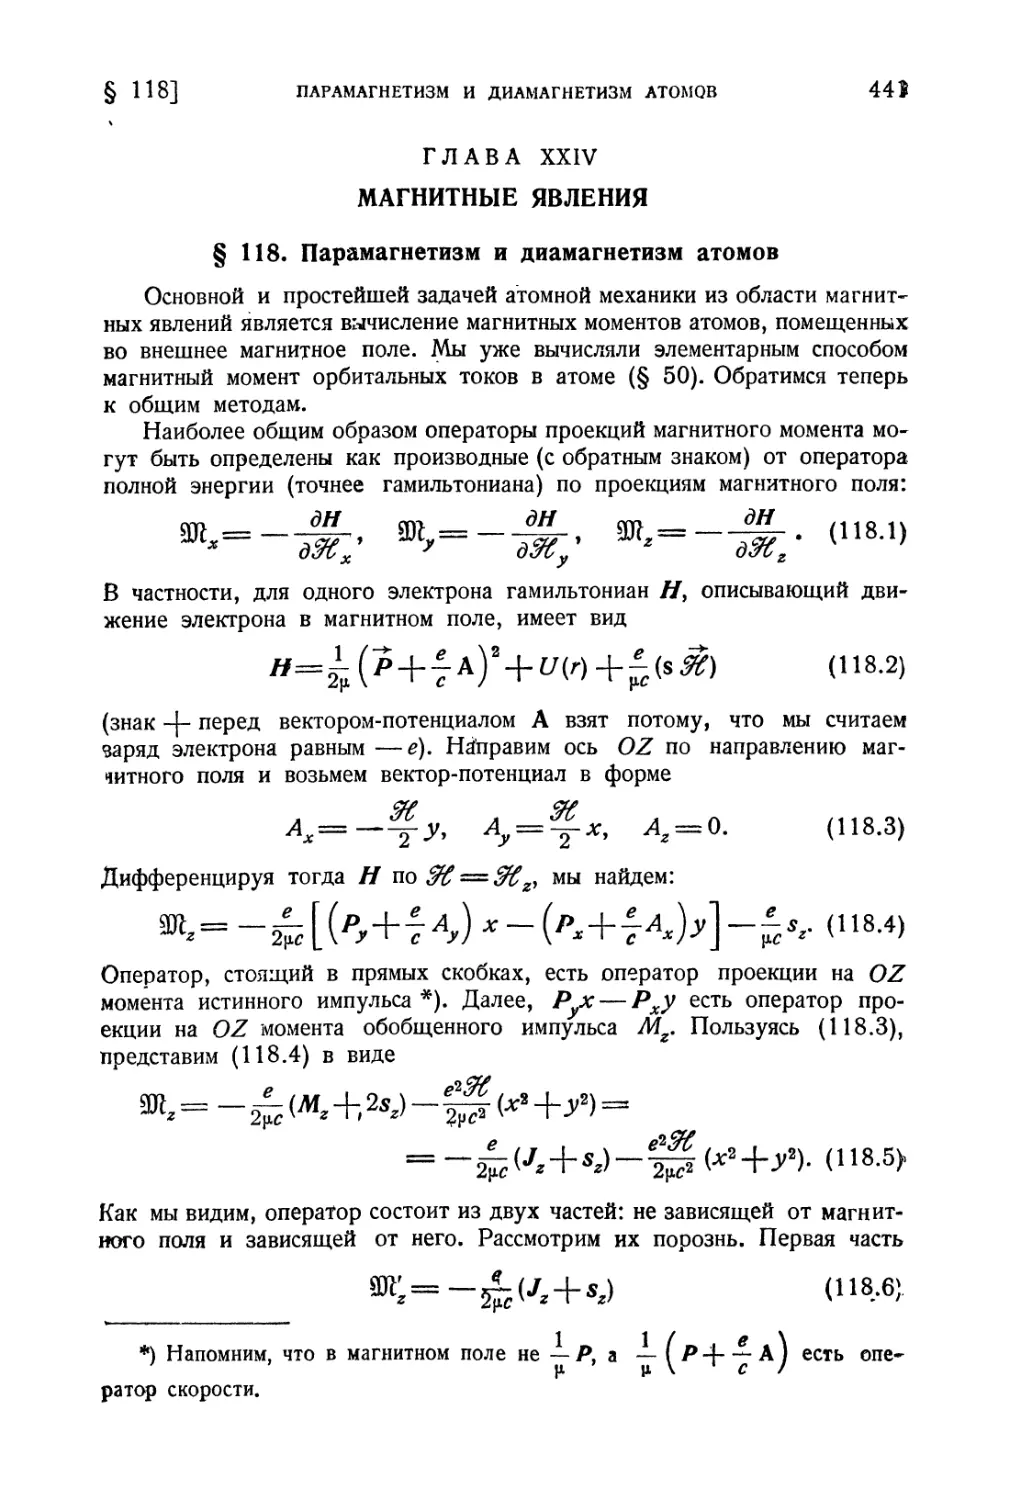 Глава XXIV. Магнитные явления
§ 118. Парамагнетизм и диамагнетизм атомов